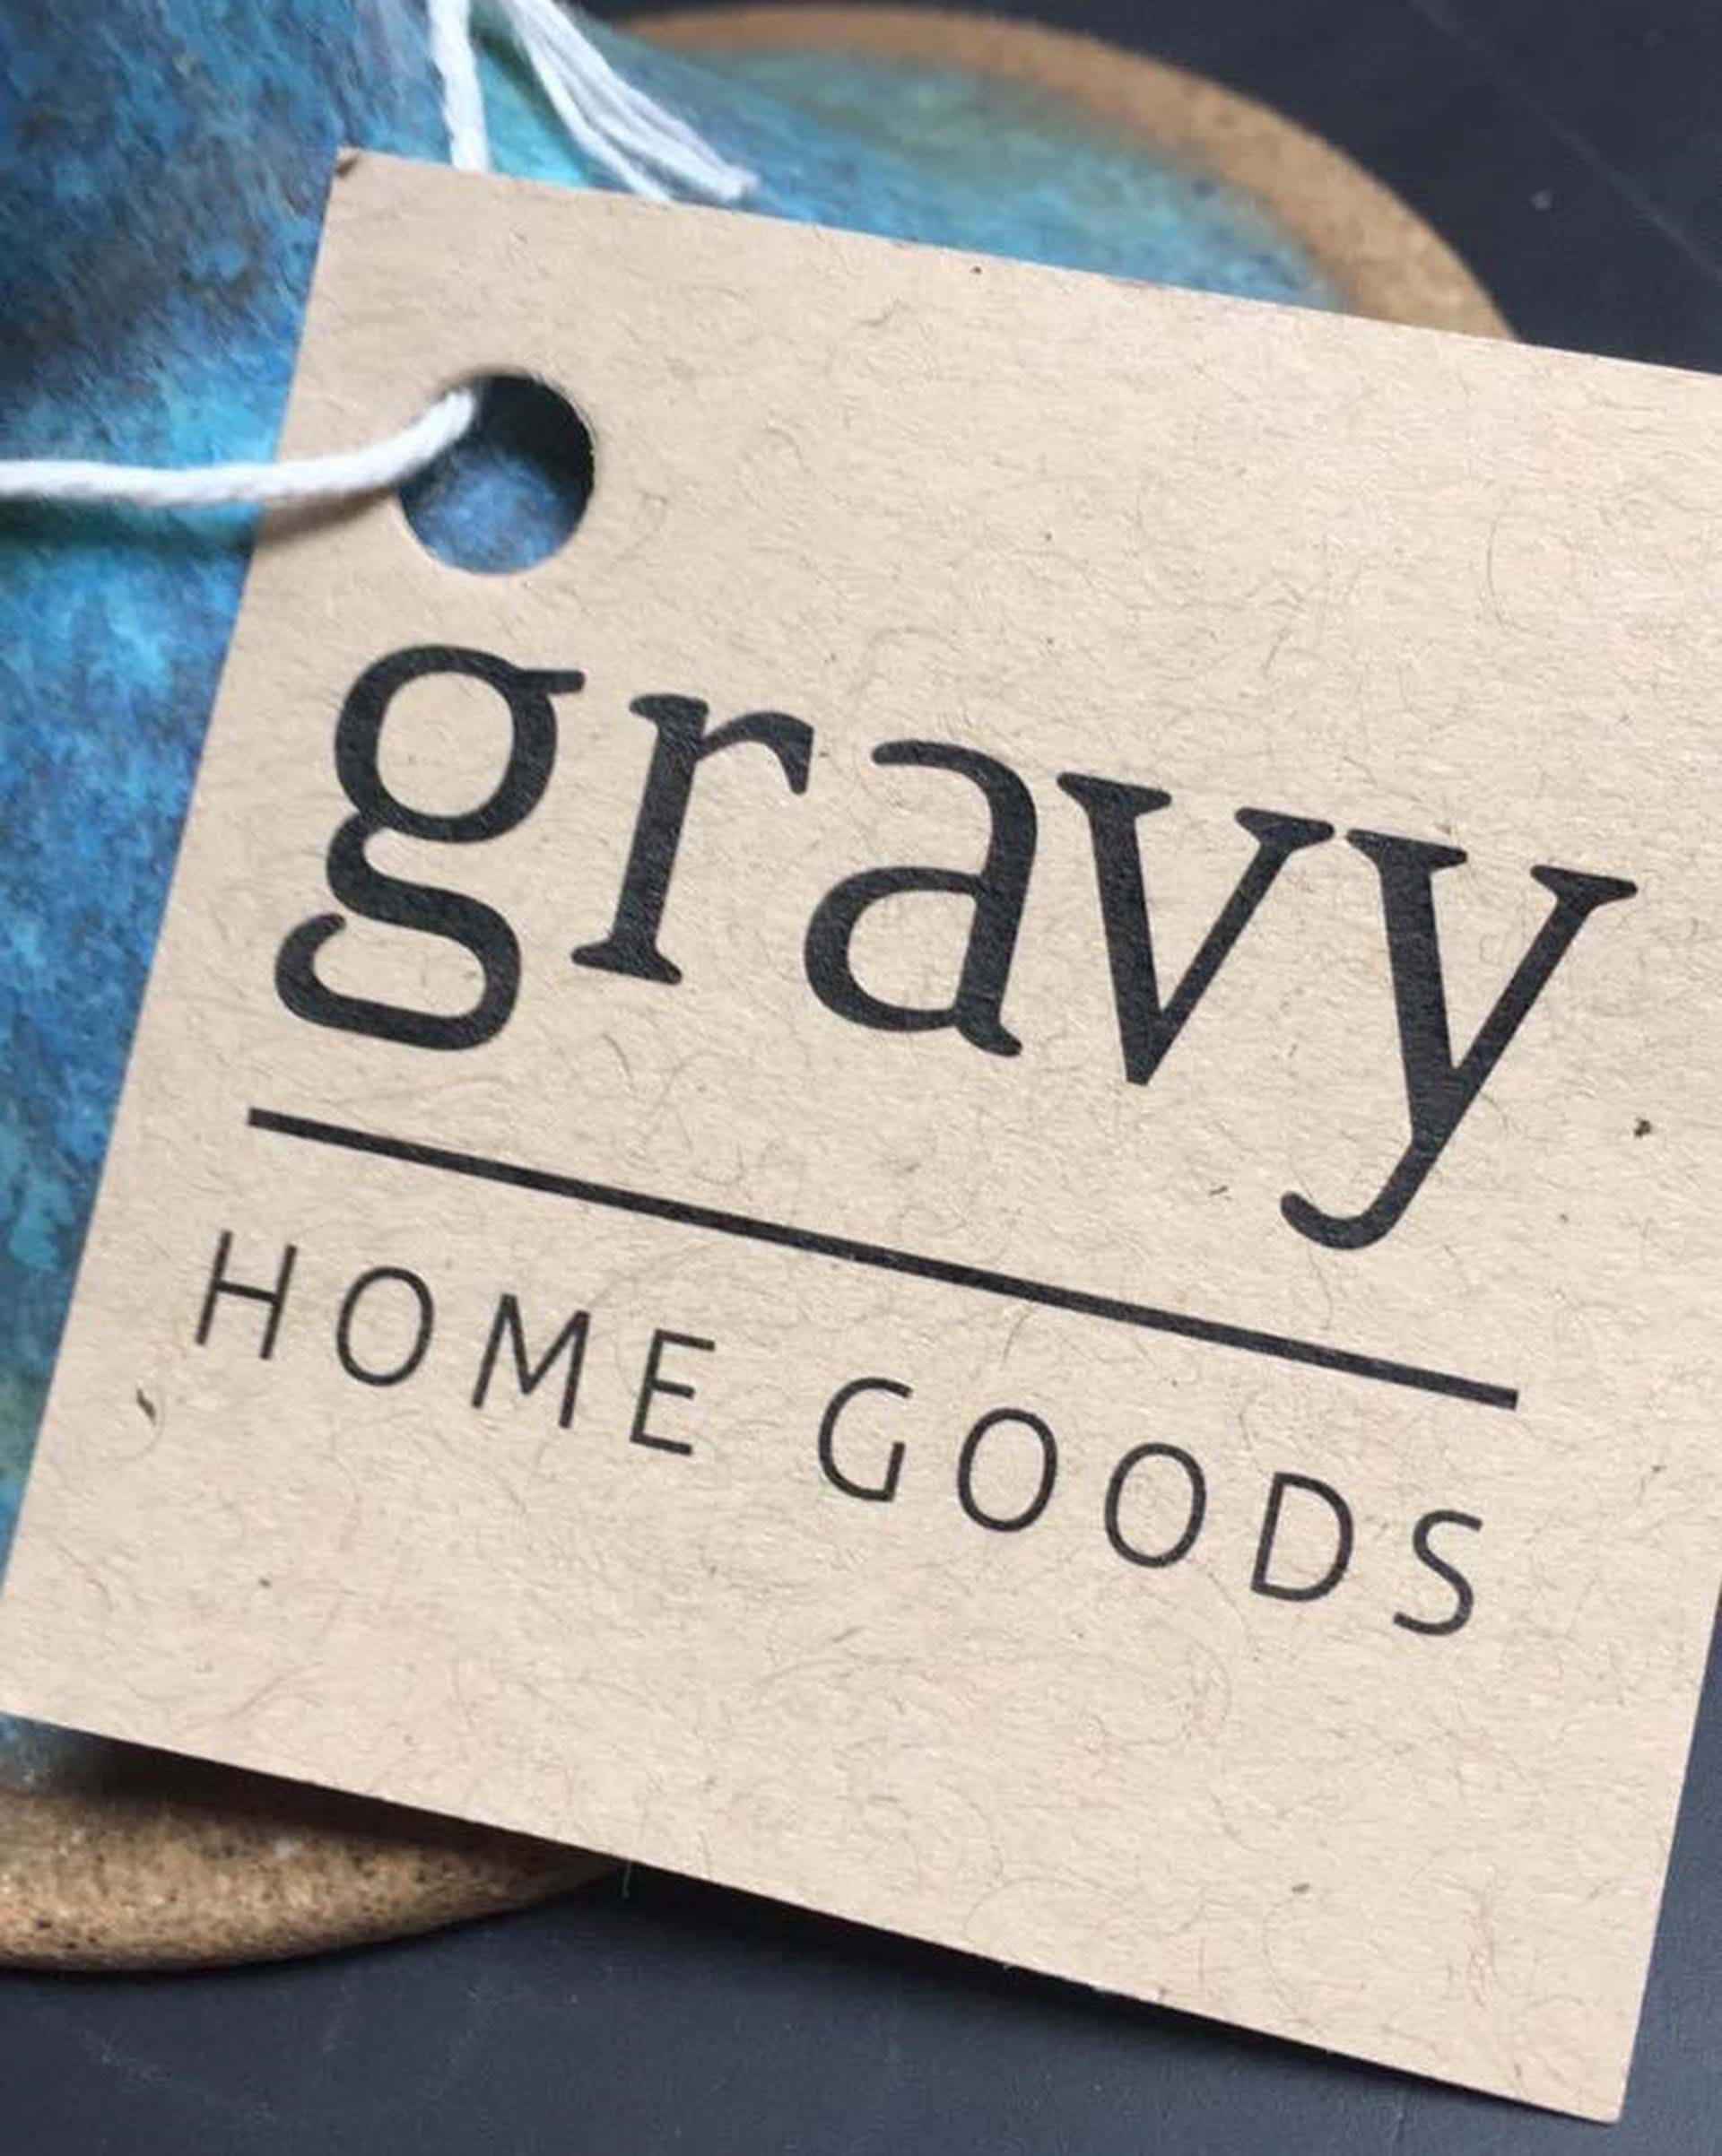 Gravy Home Goods logo